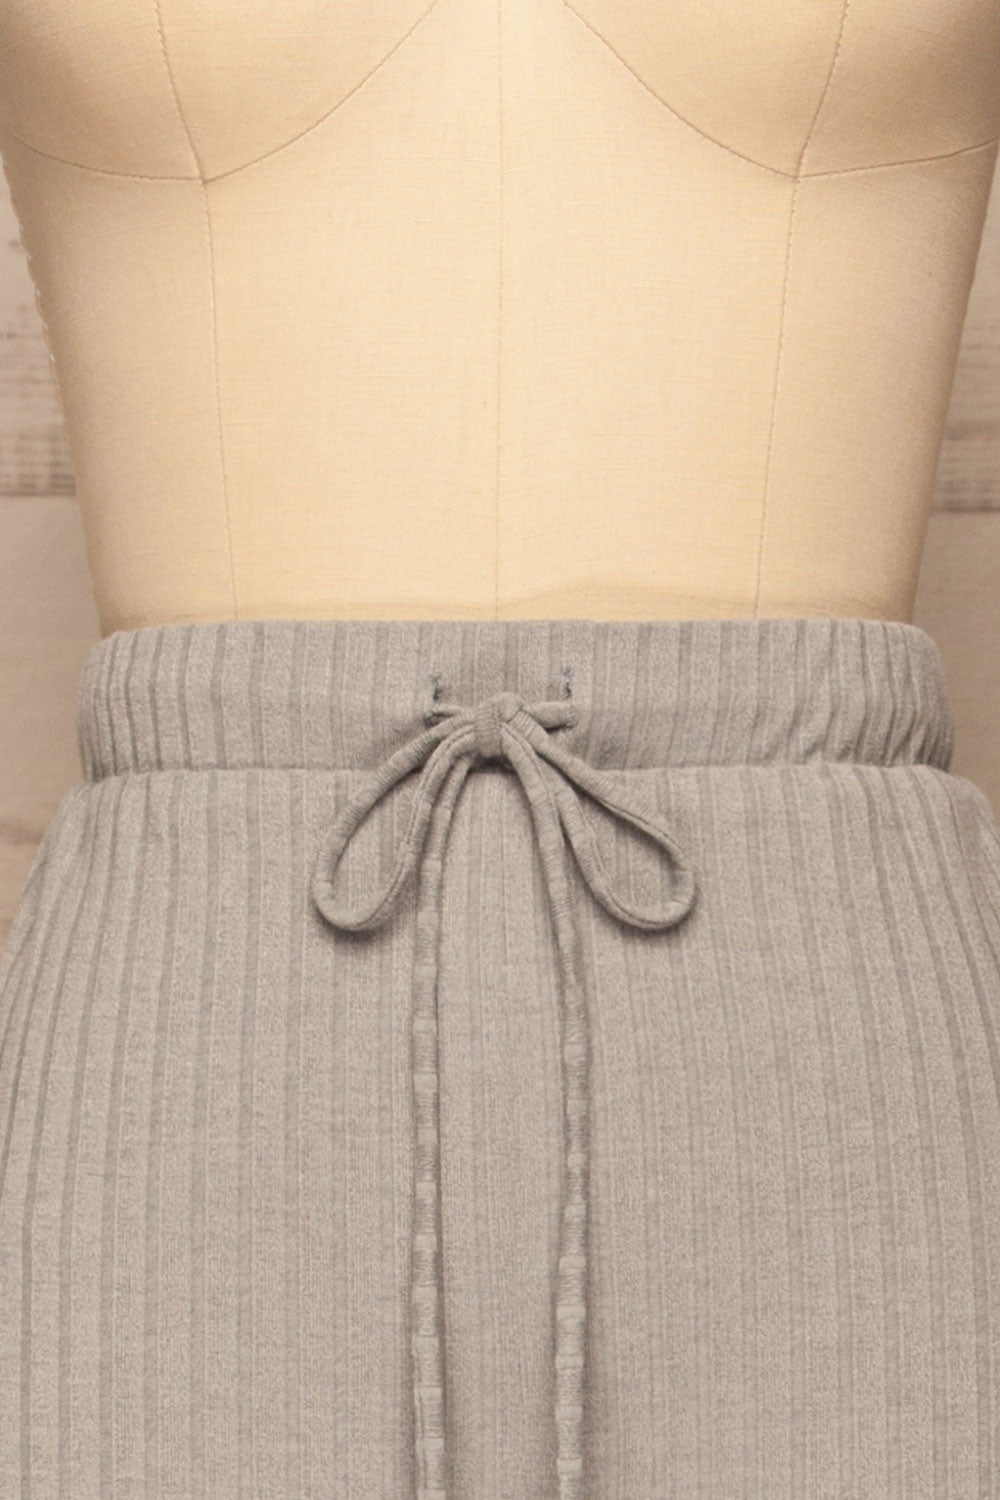 Set Shelyza Grey Crop Top & Pants | La petite garçonne front pants close-up